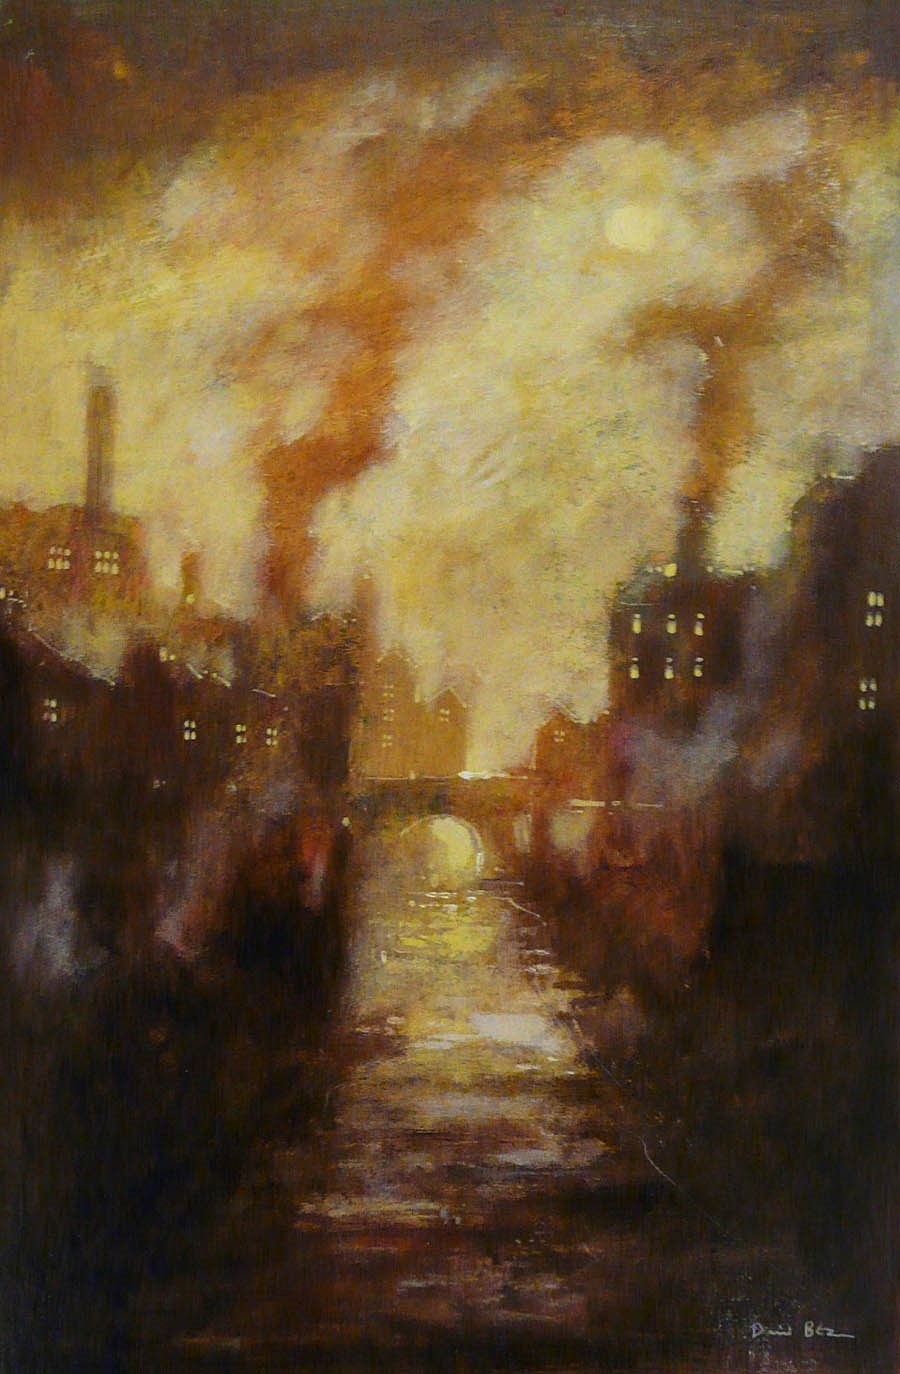 Sun through Mist by David Bez, Northern | Nostalgic | Industrial | Landscape